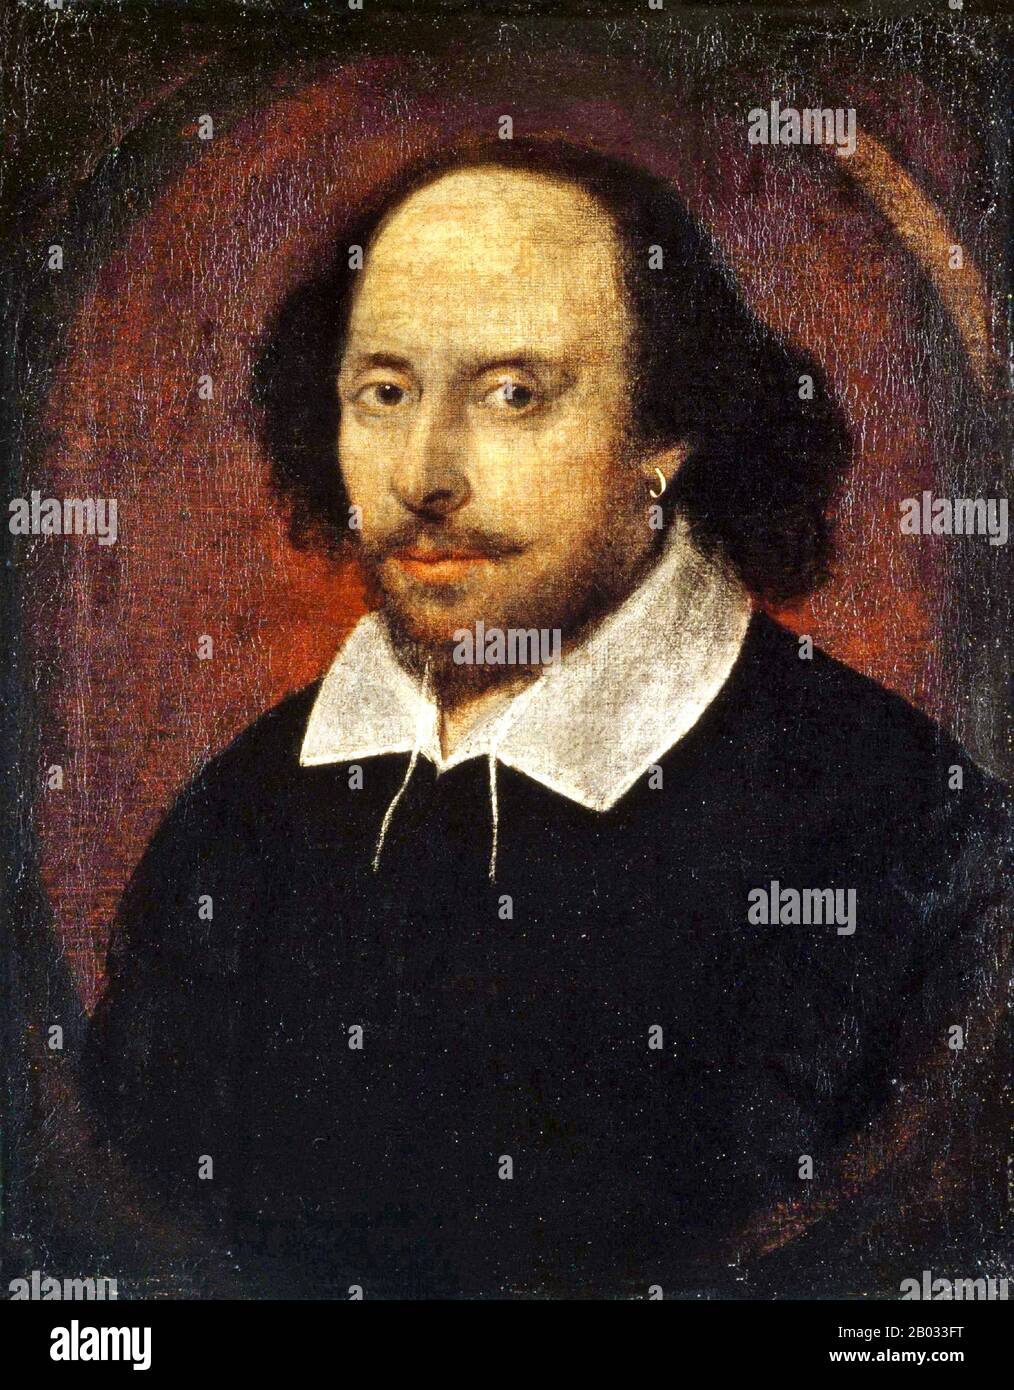 William Shakespeare (26. April 1564 - 23. April 1616) war ein englischer Dichter, Dramatiker und Schauspieler, der weithin als der größte Schriftsteller in der englischen Sprache und der vornehmste Dramatiker der Welt gilt. Seine extanten Werke, darunter Kollaborationen, bestehen aus etwa 38 Theaterstücken, 154 Sonetten, zwei langen erzählenden Gedichten und einigen anderen Versen, teilweise aus unsicherer Autorschaft. Seine Stücke wurden in jede große lebende Sprache übersetzt und werden häufiger aufgeführt als die eines anderen Dramatikers. Das Chandos-Porträt ist das bekannteste der Porträts, die William Shakespeare darstellen können. Painte Stockfoto